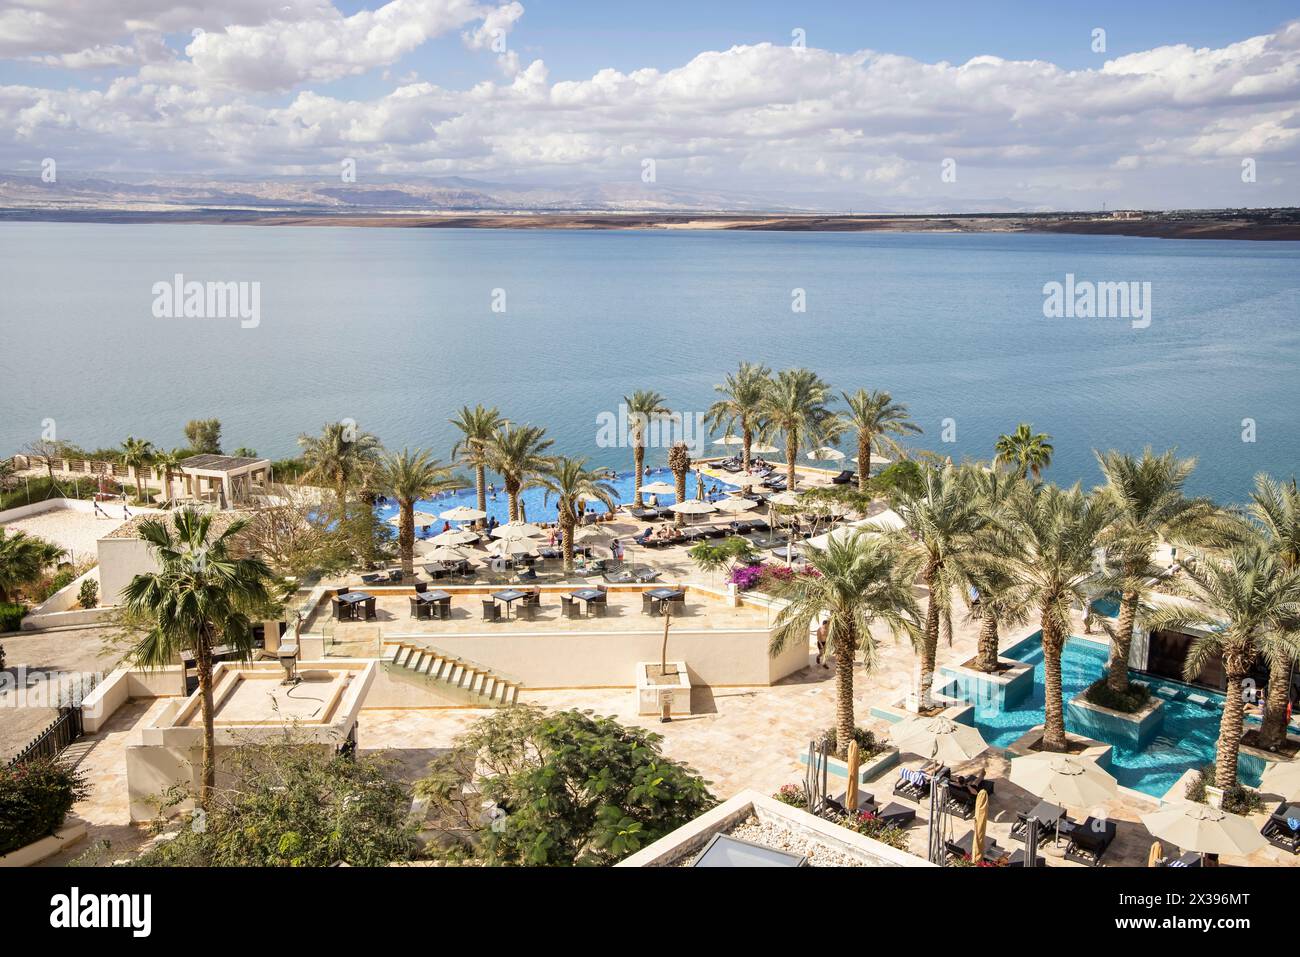 Das hilton Dead Sea Resort am Ufer des Toten Meeres ist der niedrigste Punkt der Erde mit 400 Fuß unter dem Meeresspiegel in jordanien Stockfoto